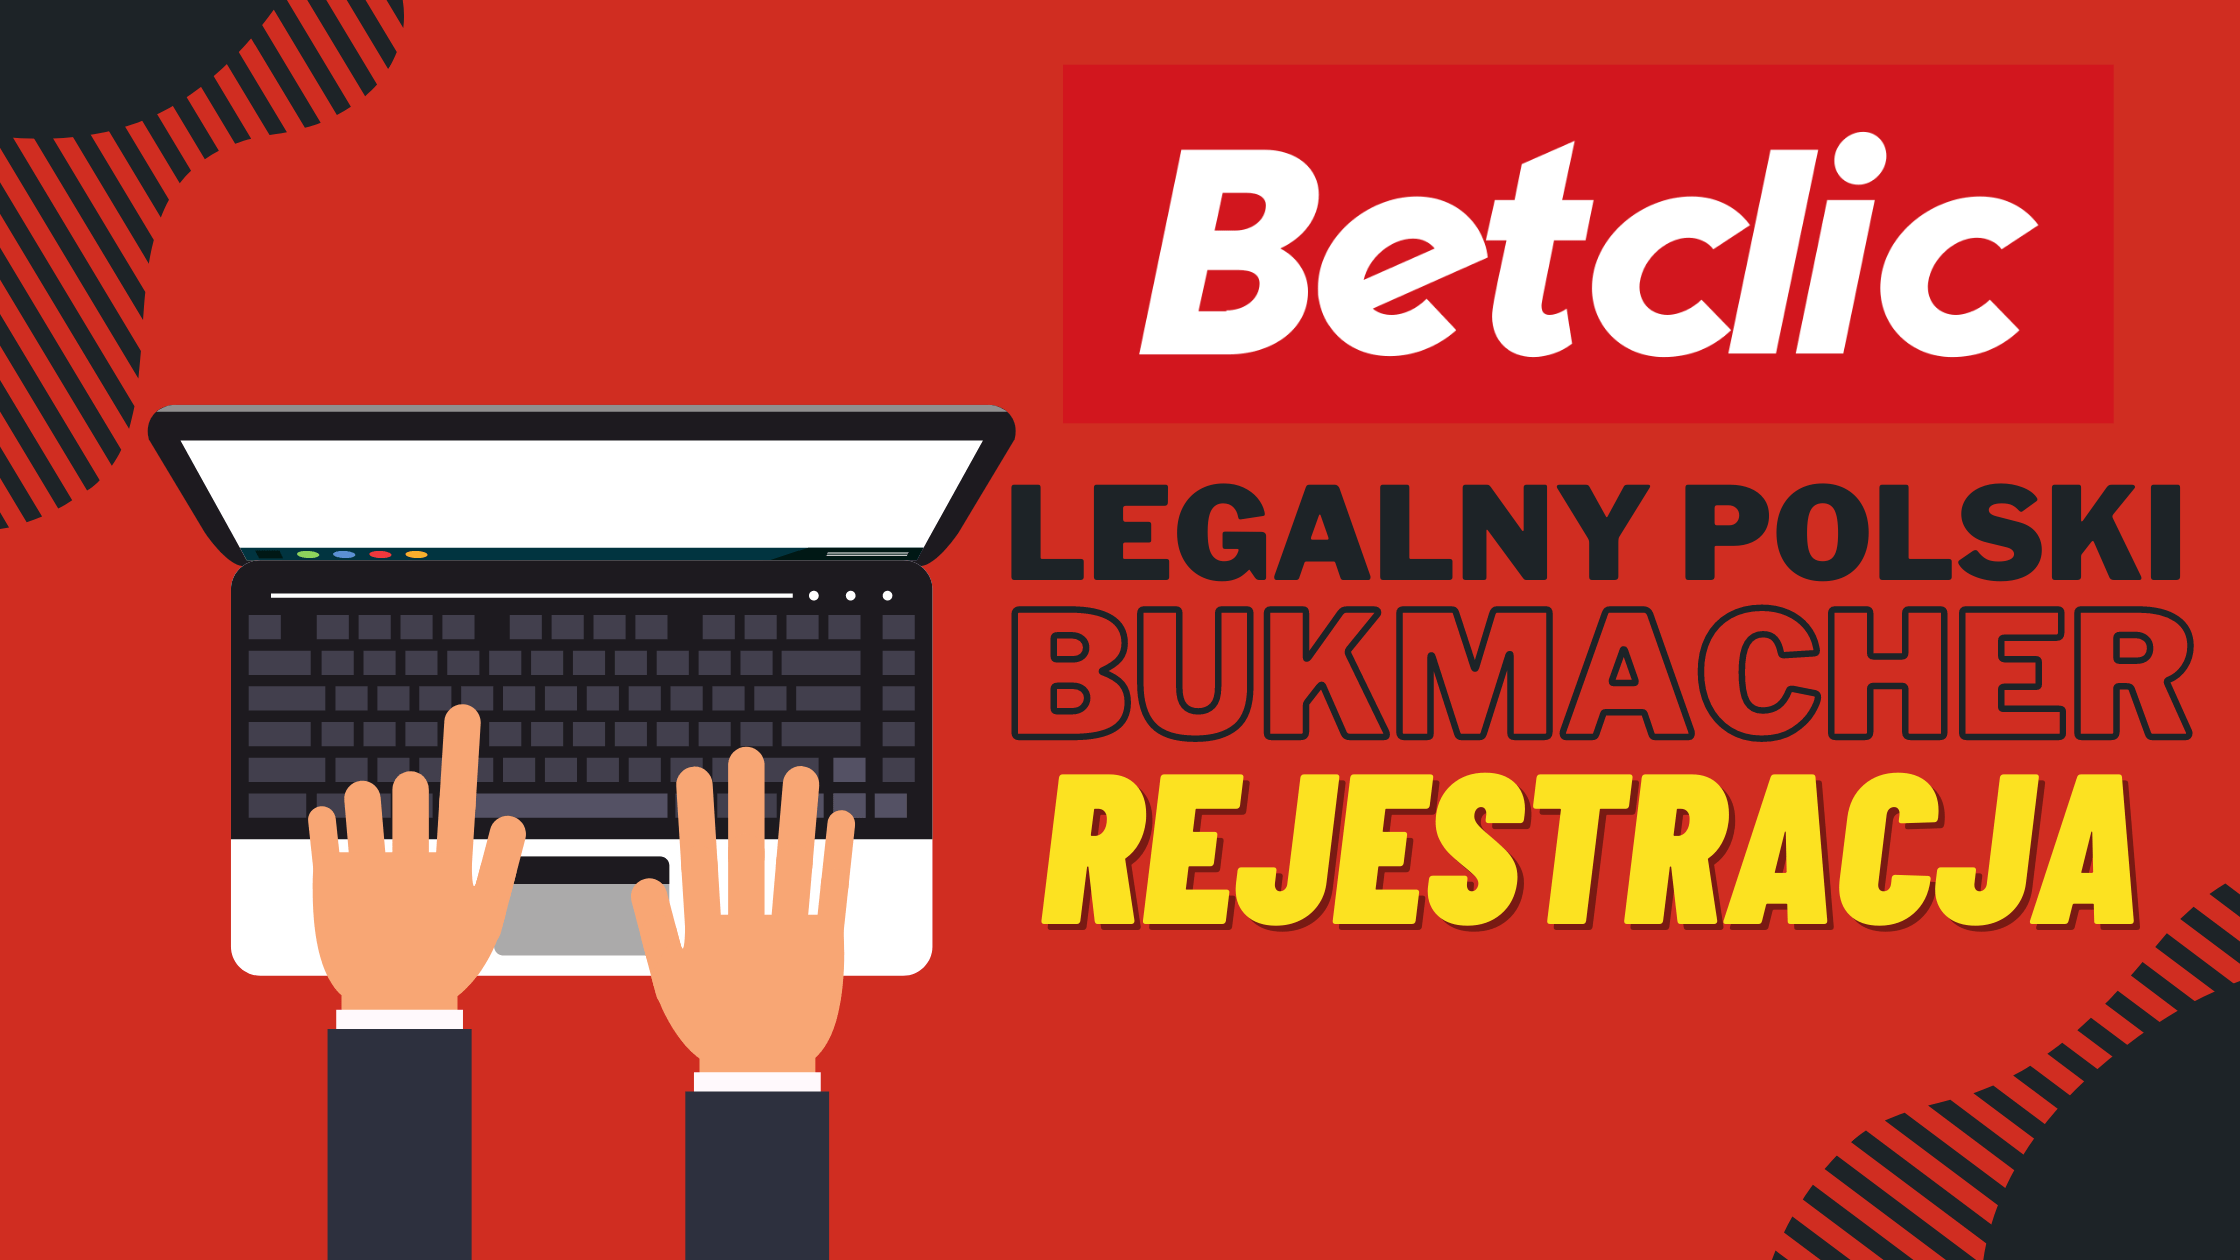 Legalny polski bukmacher Betclic rejestracja